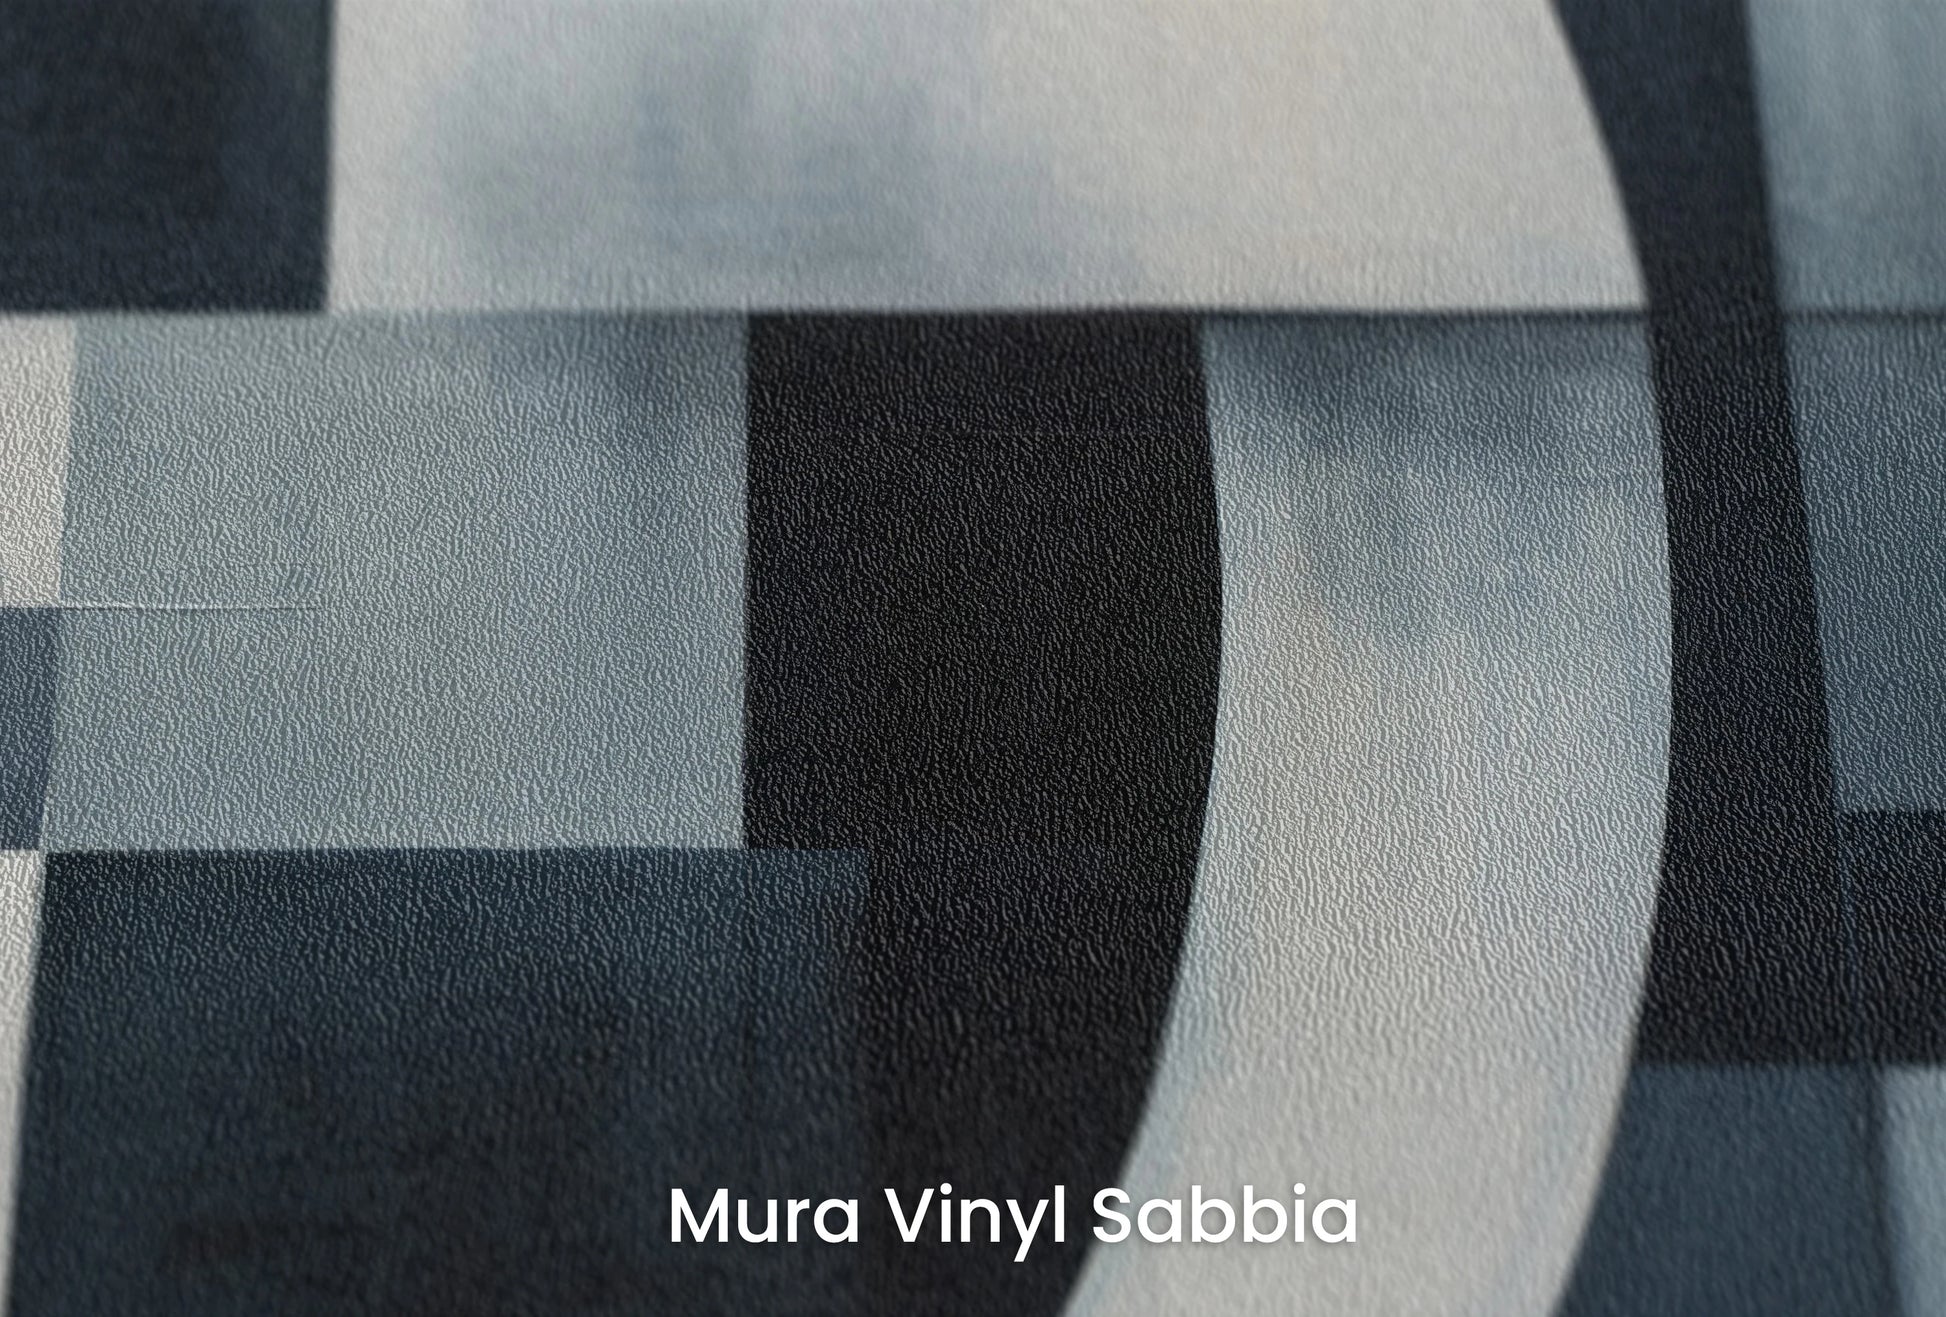 Zbliżenie na artystyczną fototapetę o nazwie Night Geometry na podłożu Mura Vinyl Sabbia struktura grubego ziarna piasku.